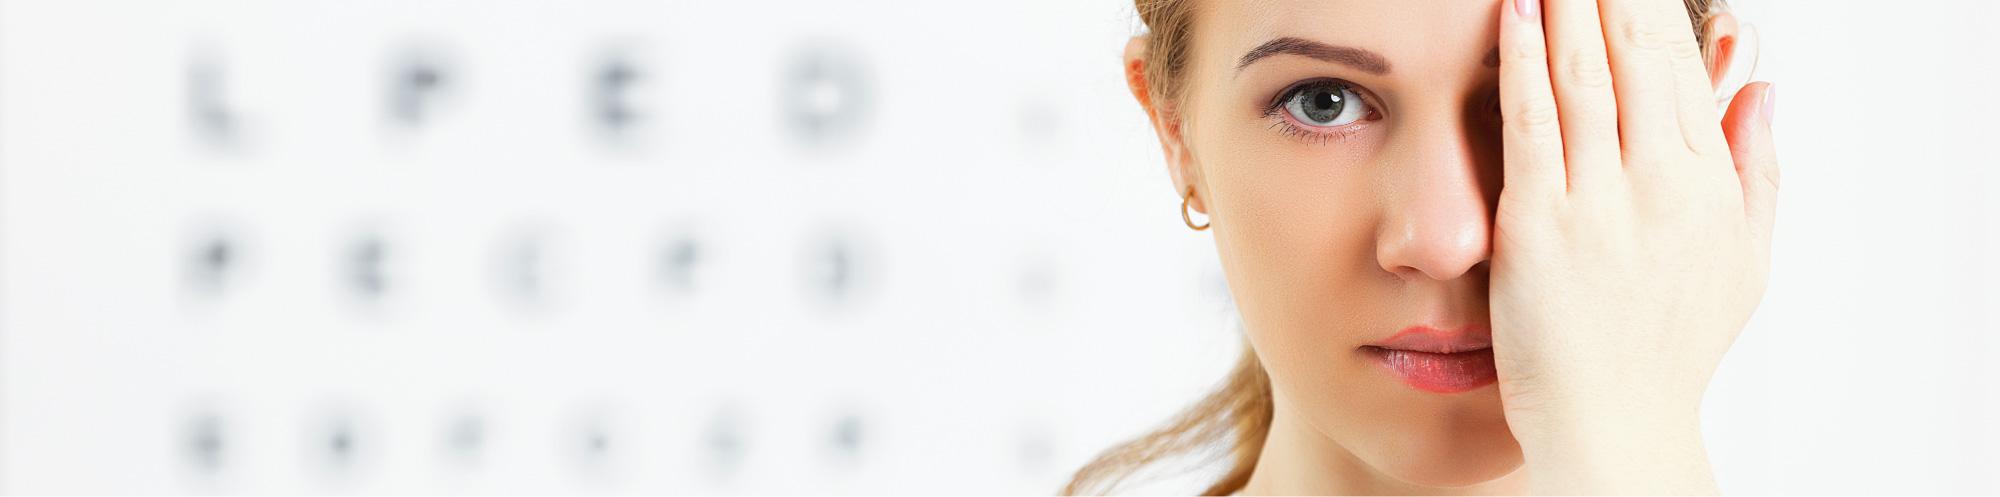 Unsere Leistungen - Augenarztpraxis Buchen